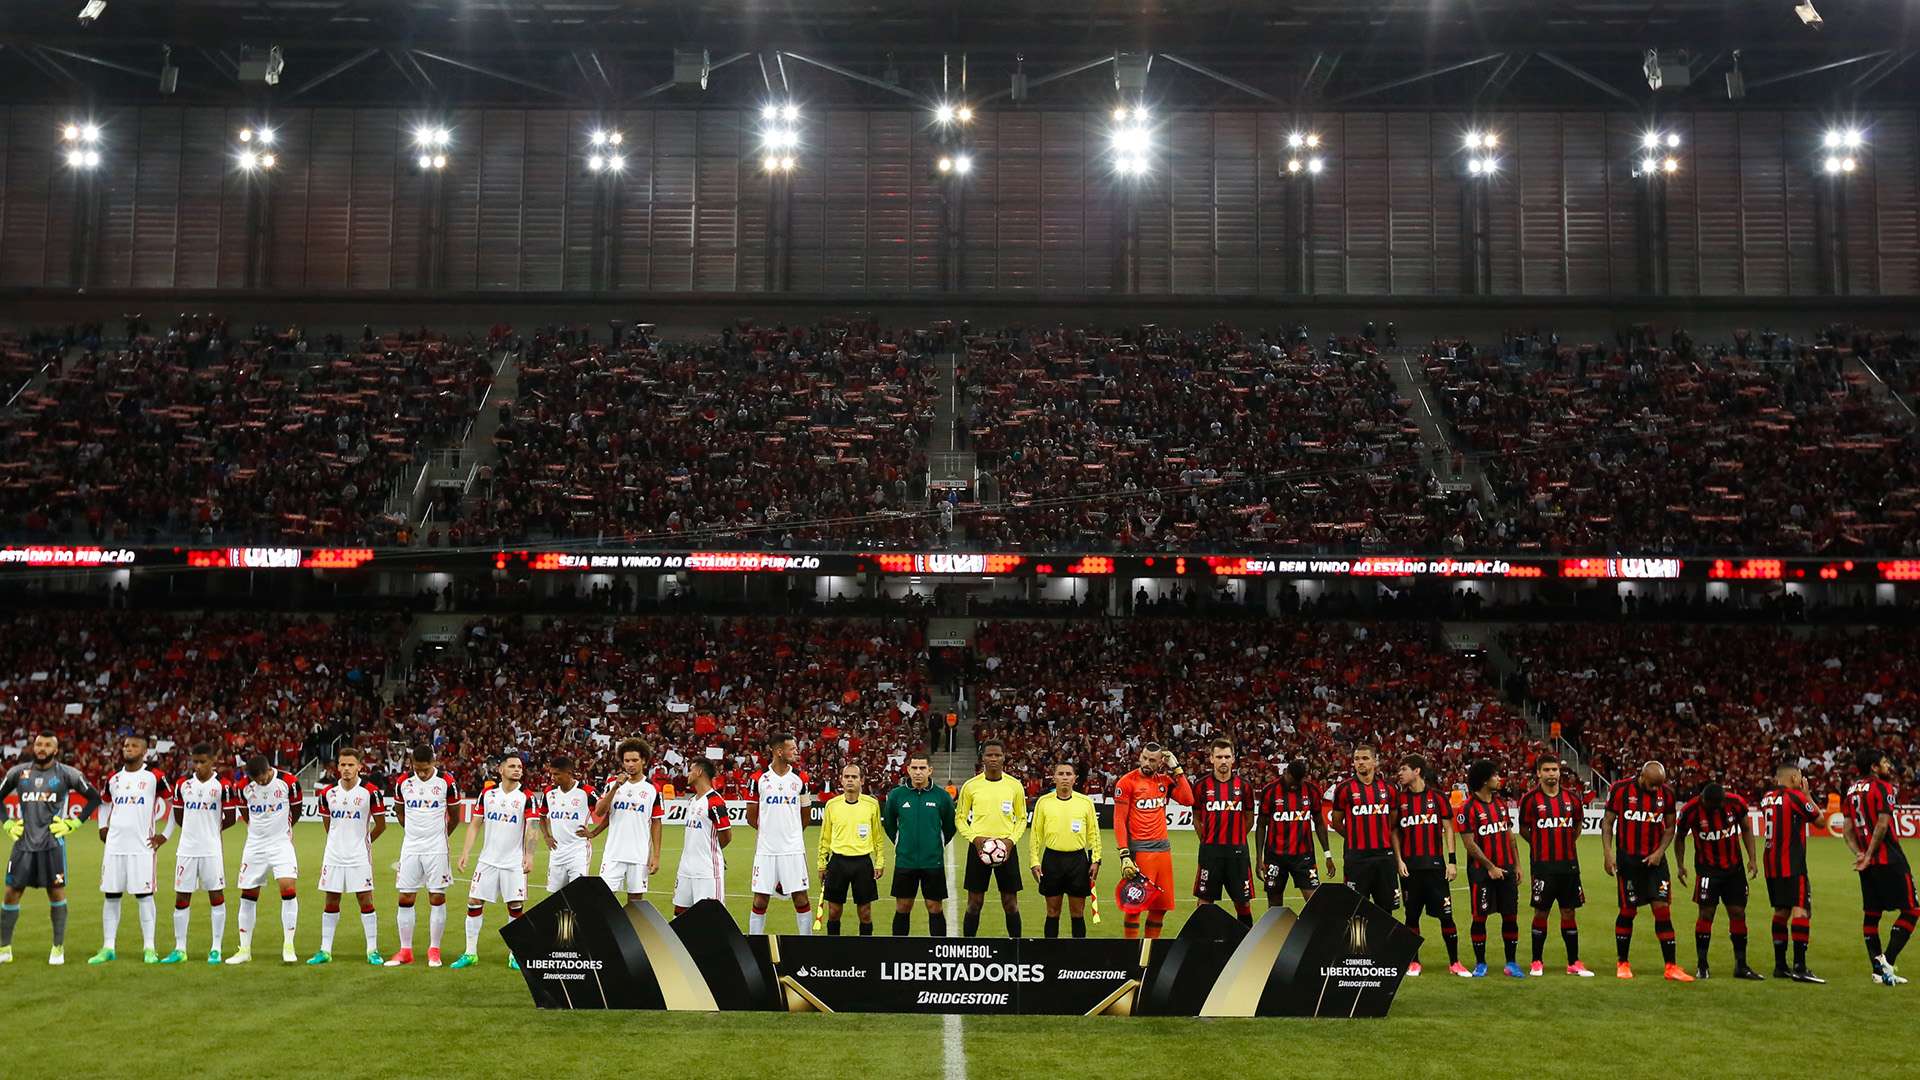 Arena da Baixada Atletico-PR Flamengo Libertadores 26042017